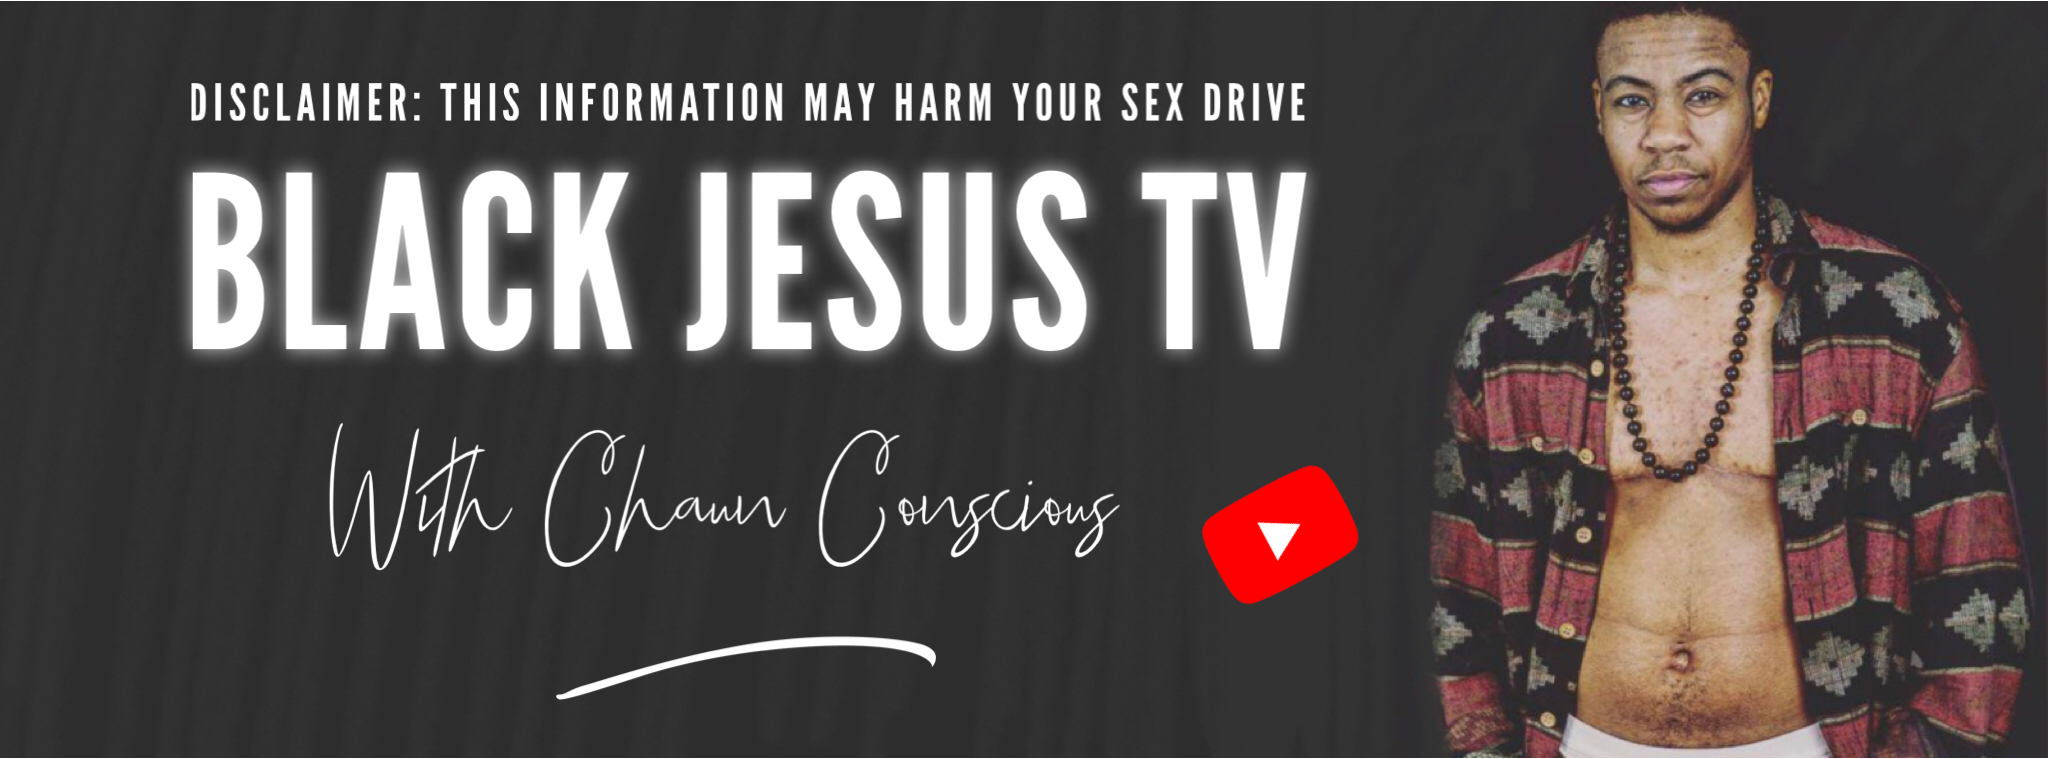 Black Jesus TV